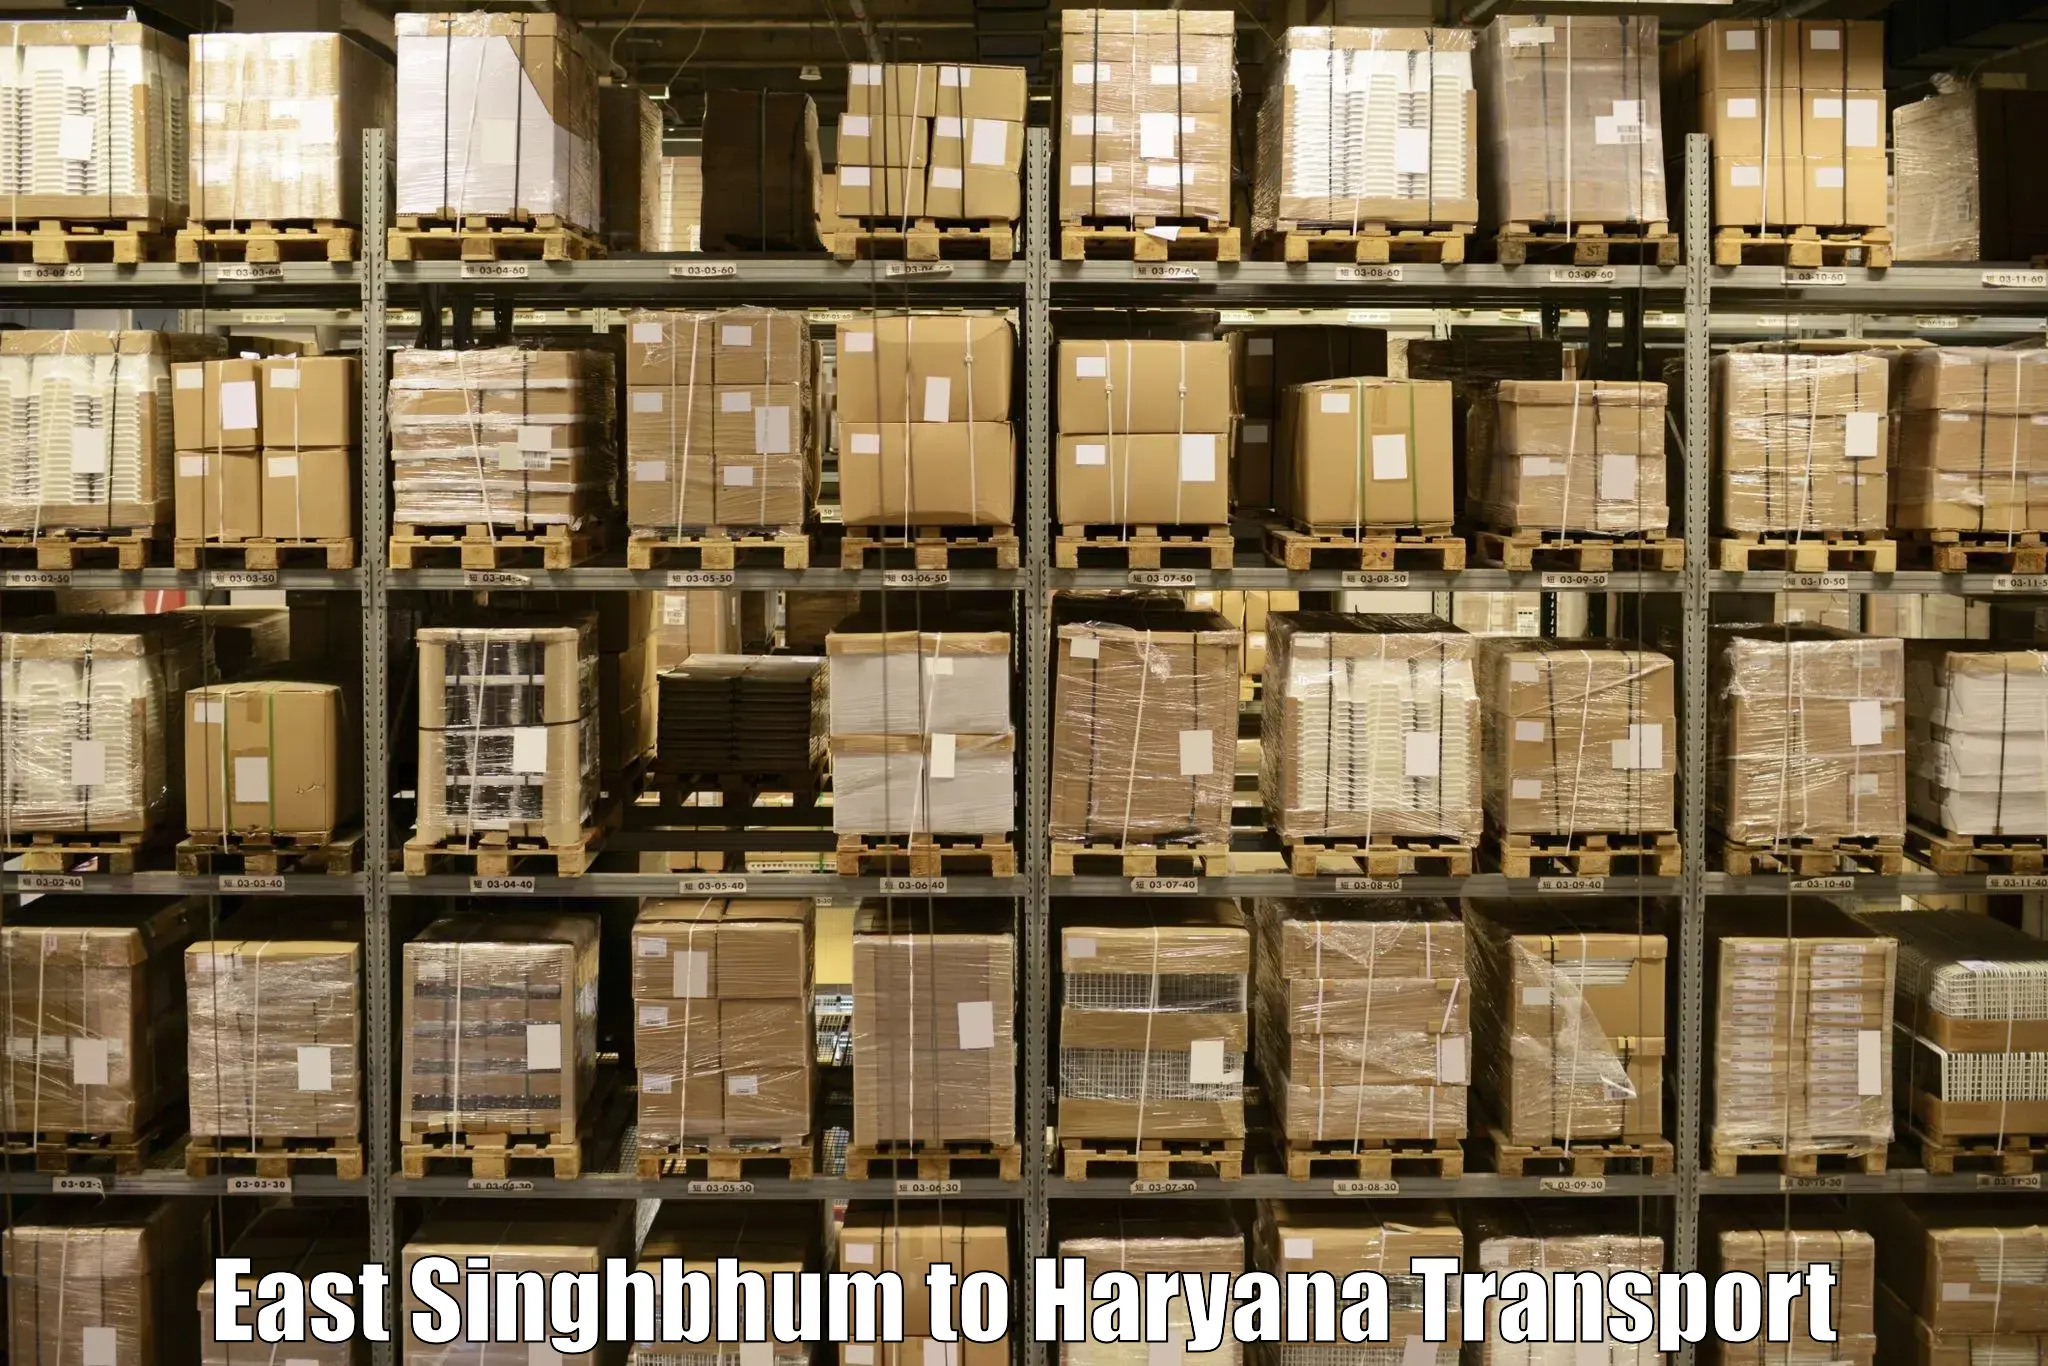 Bike shipping service East Singhbhum to Hansi